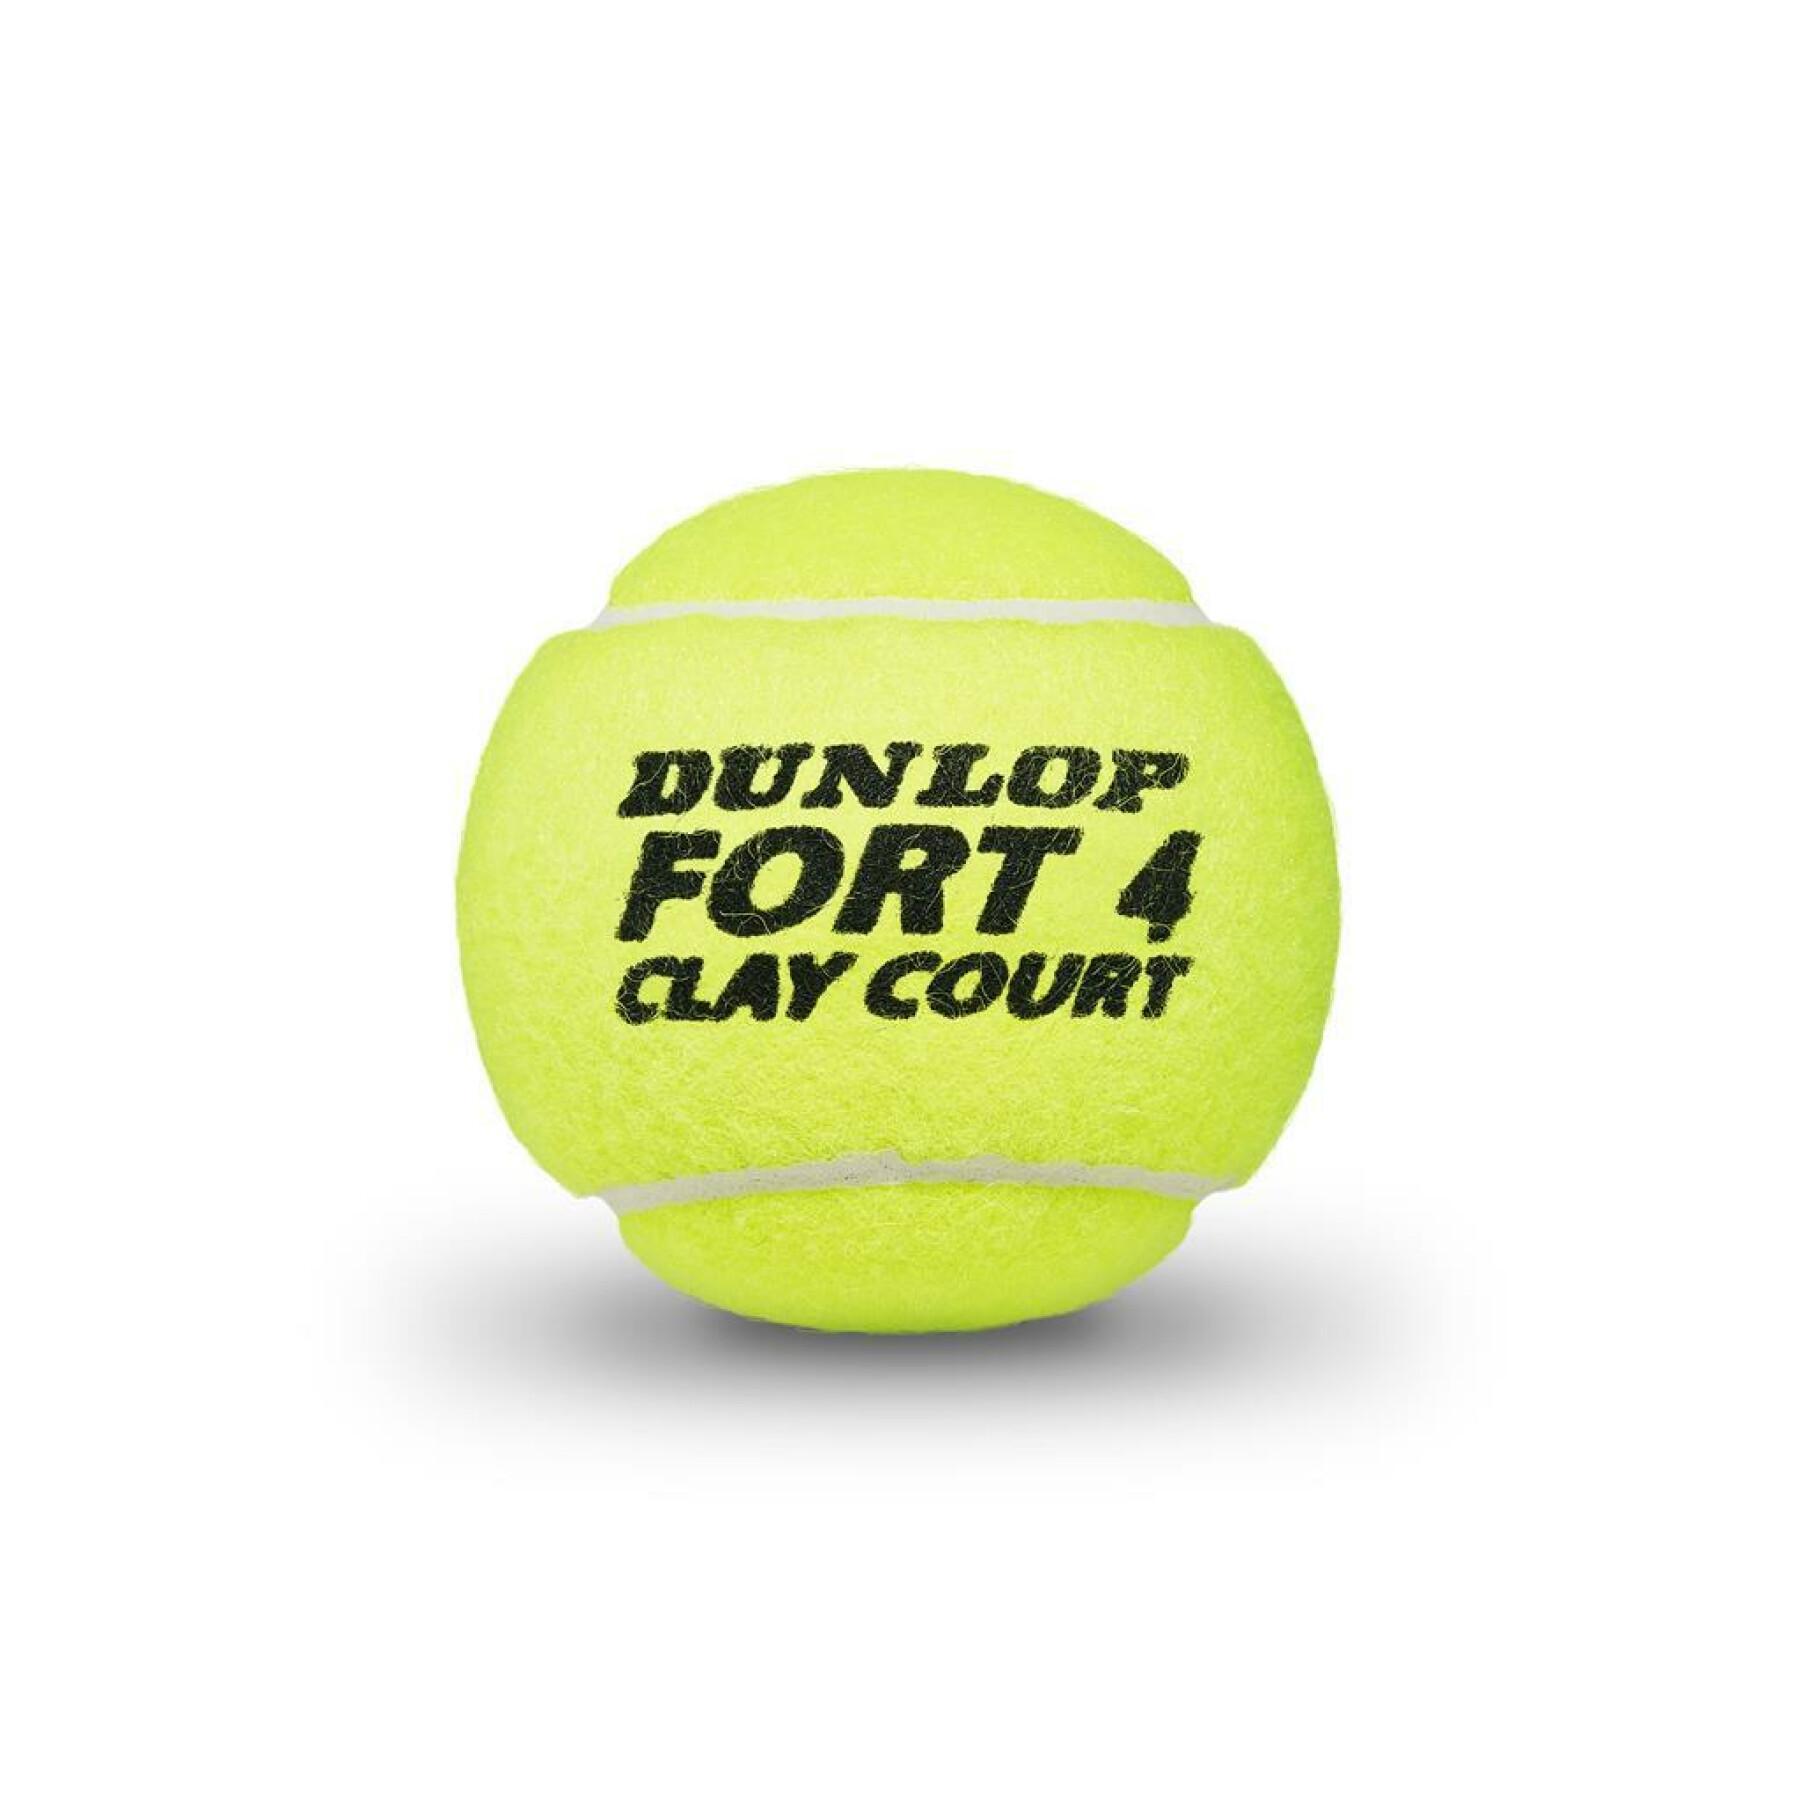 Lot de 4 balles de tennis Dunlop fort clay court 4tin